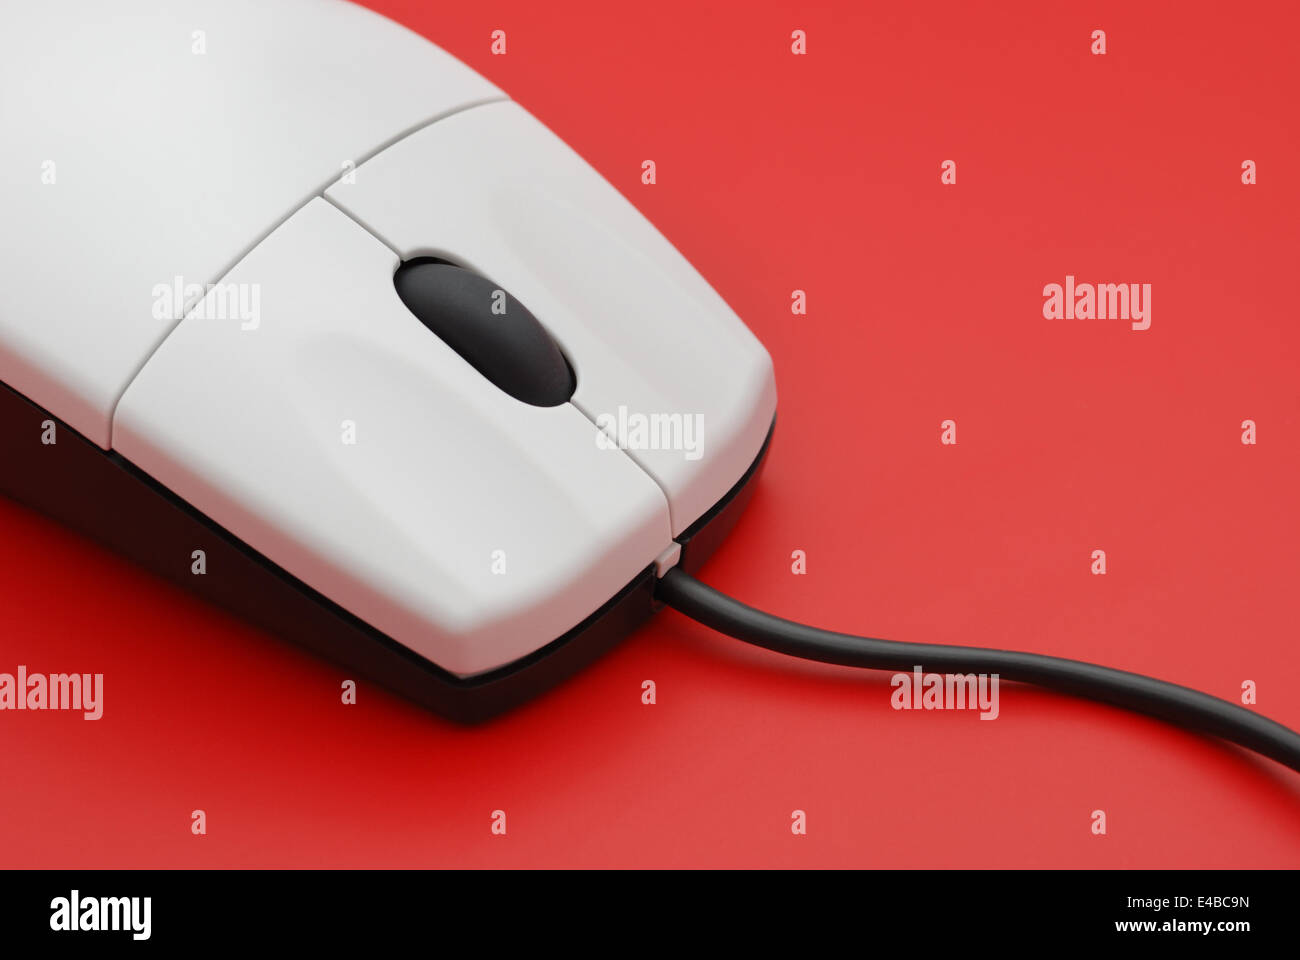 La souris de l'ordinateur Banque D'Images